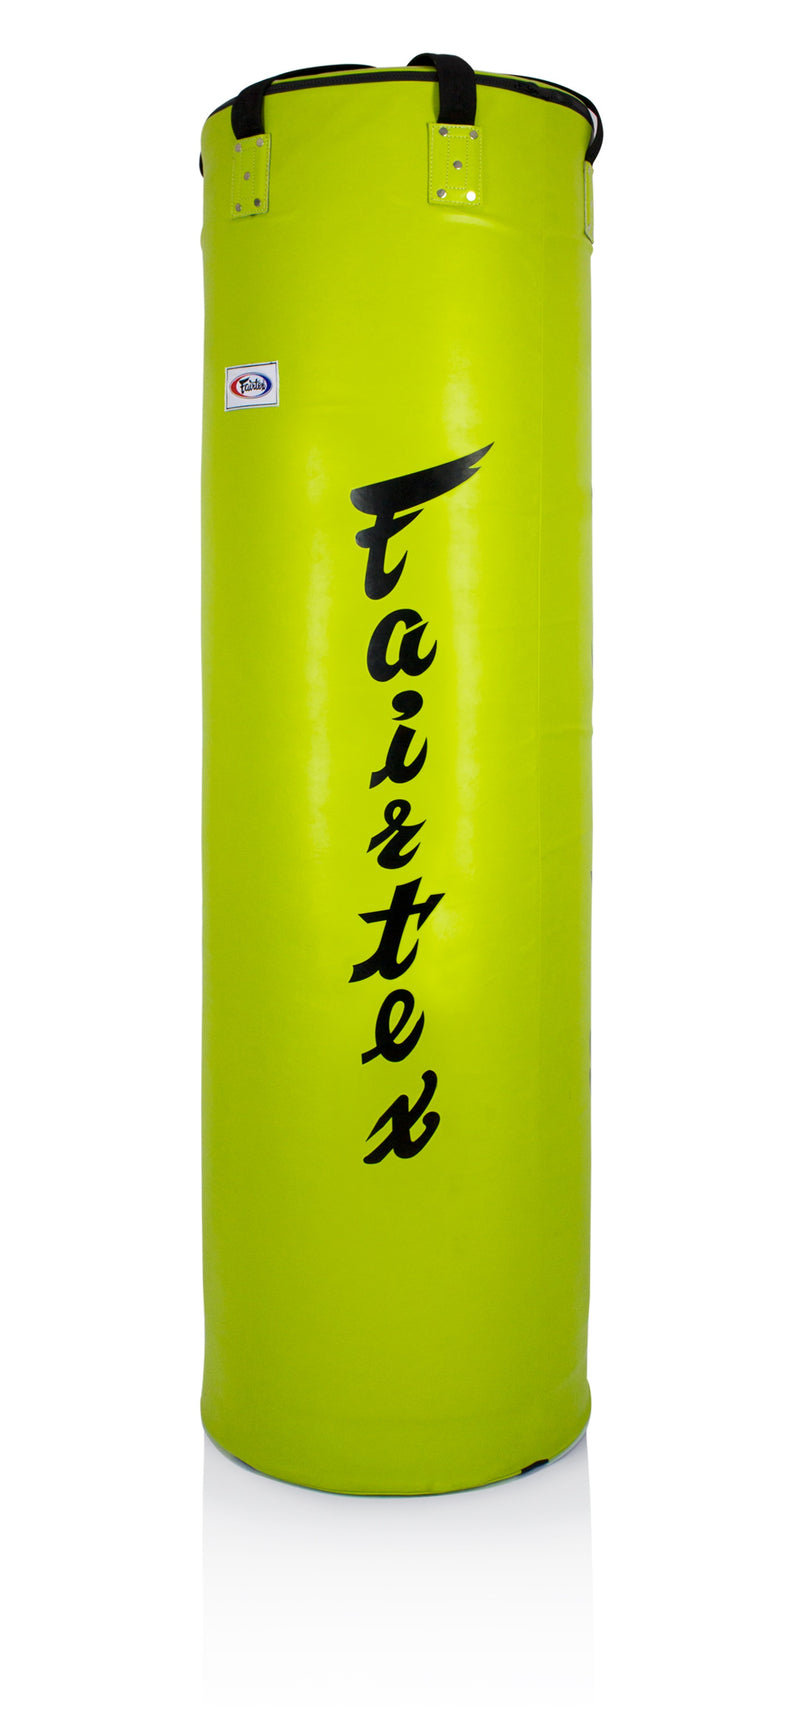 Fairtex HB7 Muay Thai Pole Heavy Bag Unfilled - Fairtex Store